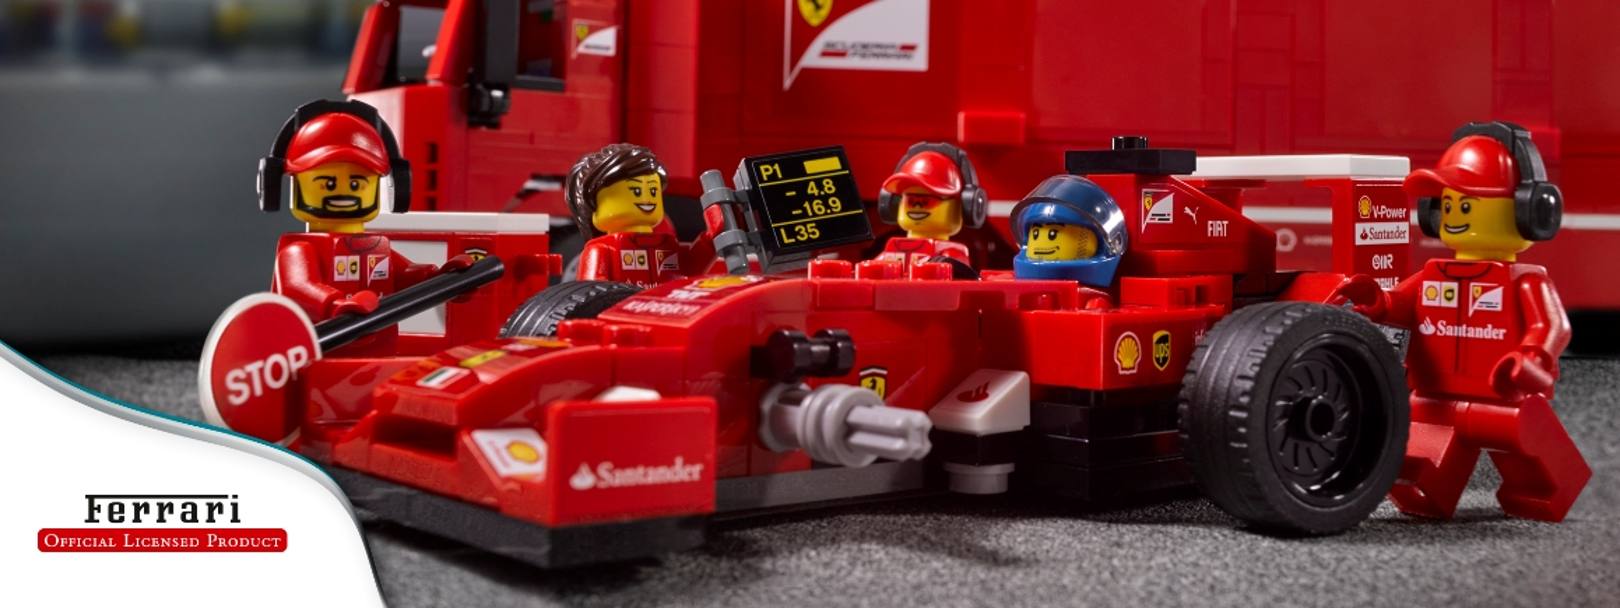 La Ferrari F.1 F14 T al pit-stop completa di meccanici e camion d’assistenza